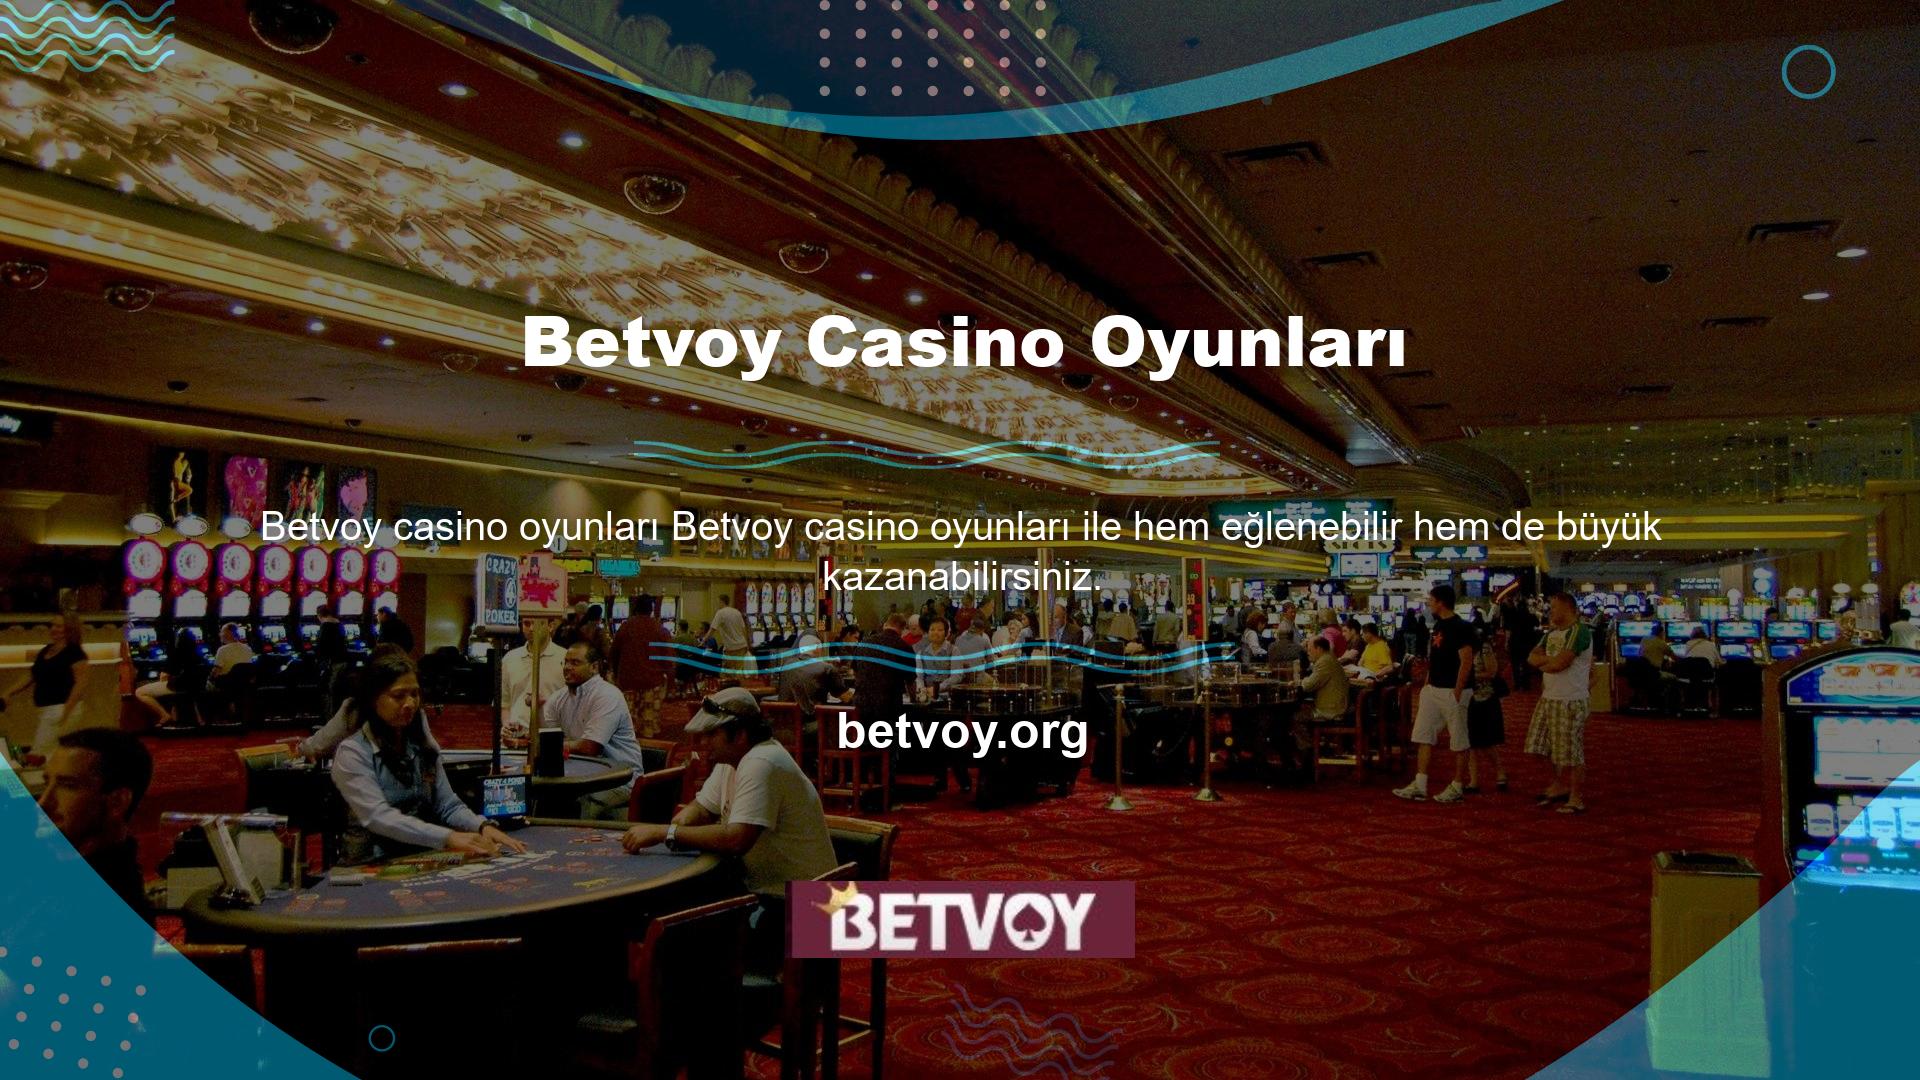 Betvoy Casino cashback bonusu ile riskinizi azaltabilirsiniz